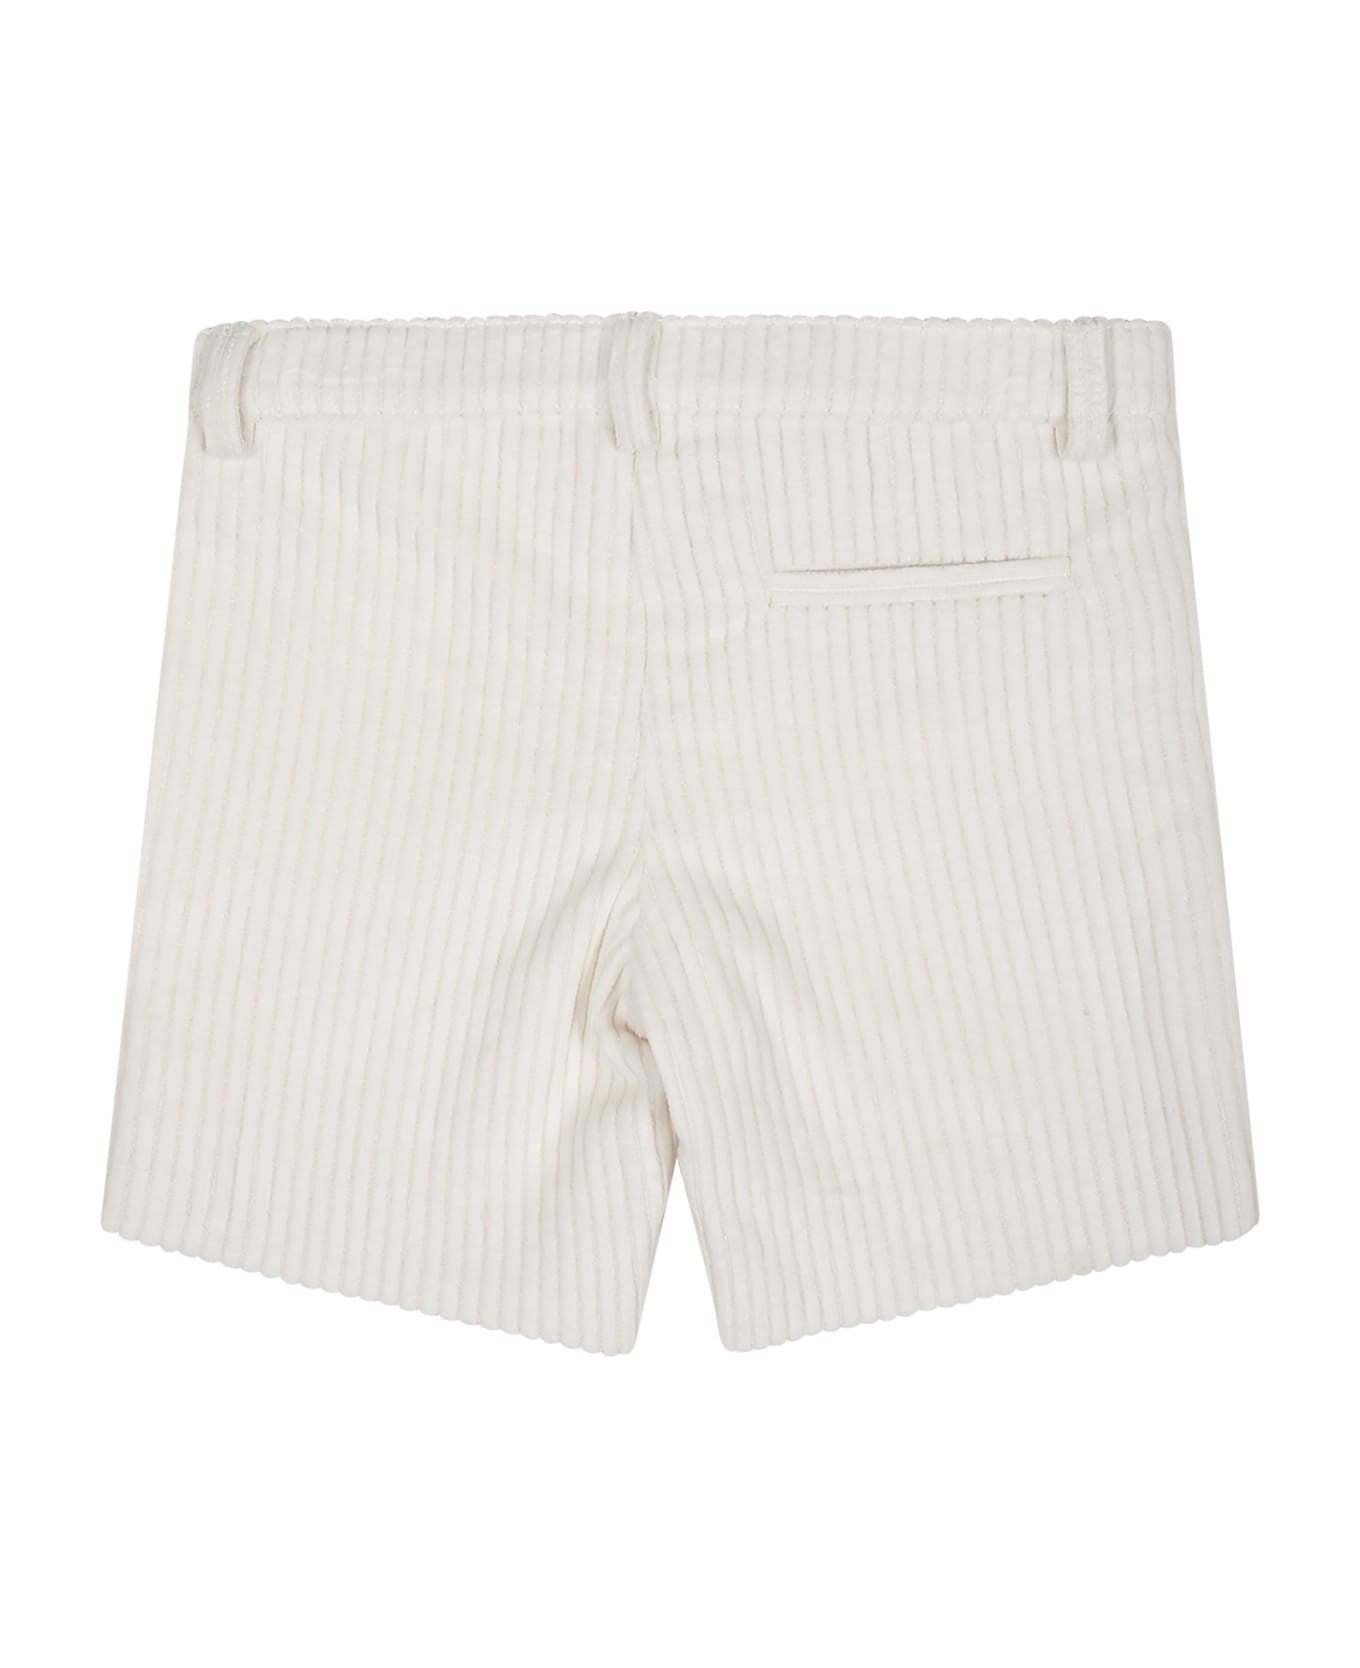 Little Bear White Shorts For Baby Boy - White